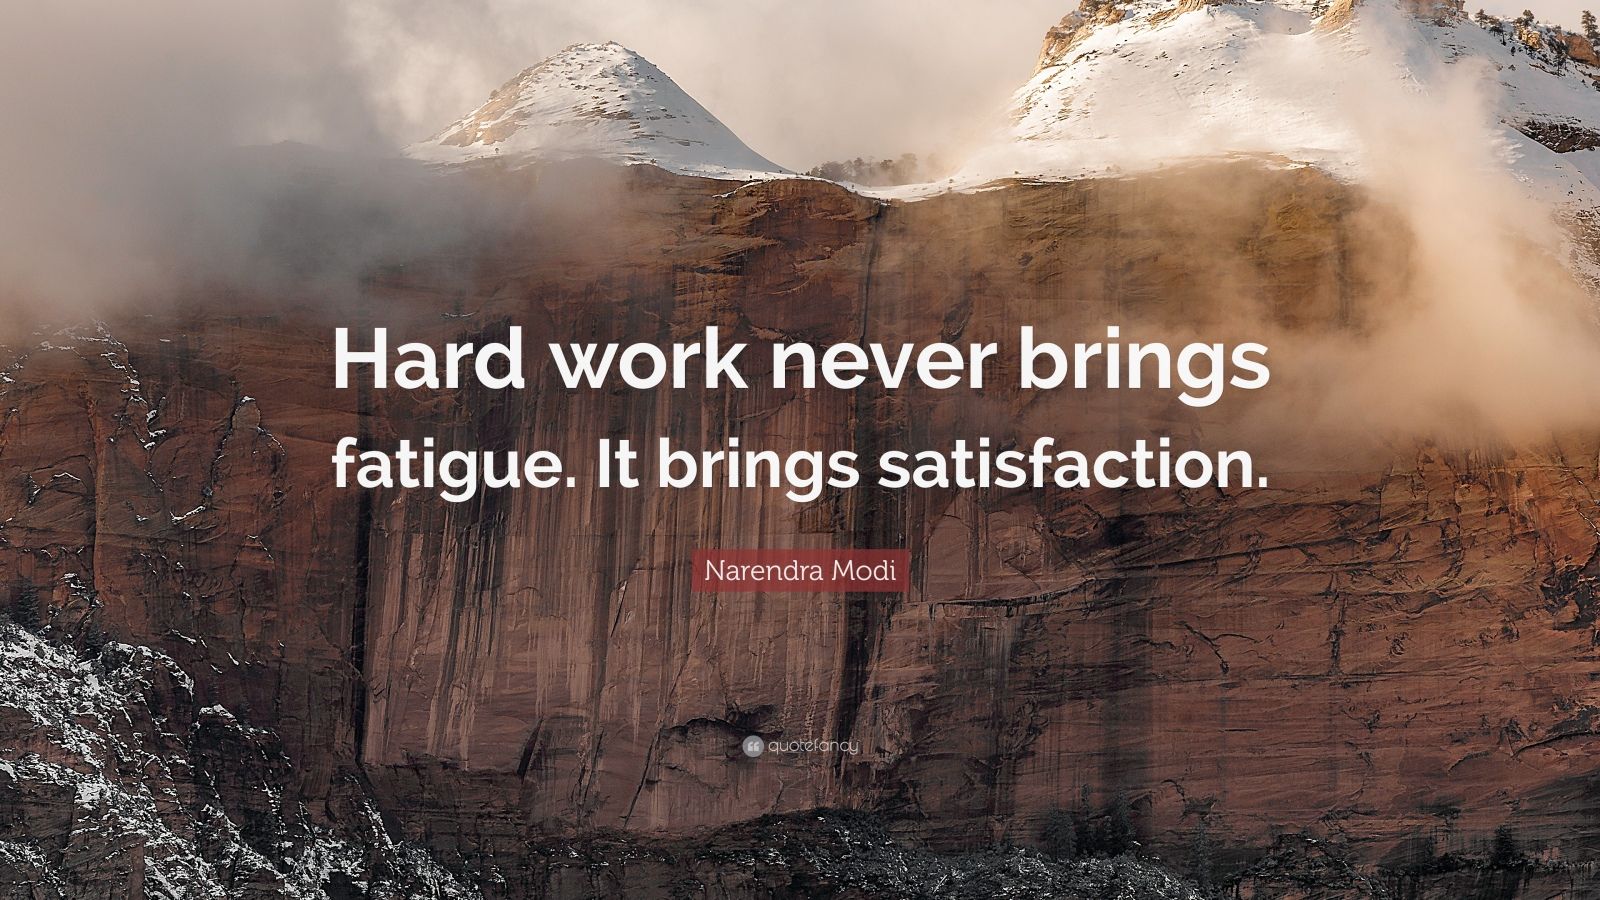 Narendra Modi Quote: “Hard work never brings fatigue. It brings ...